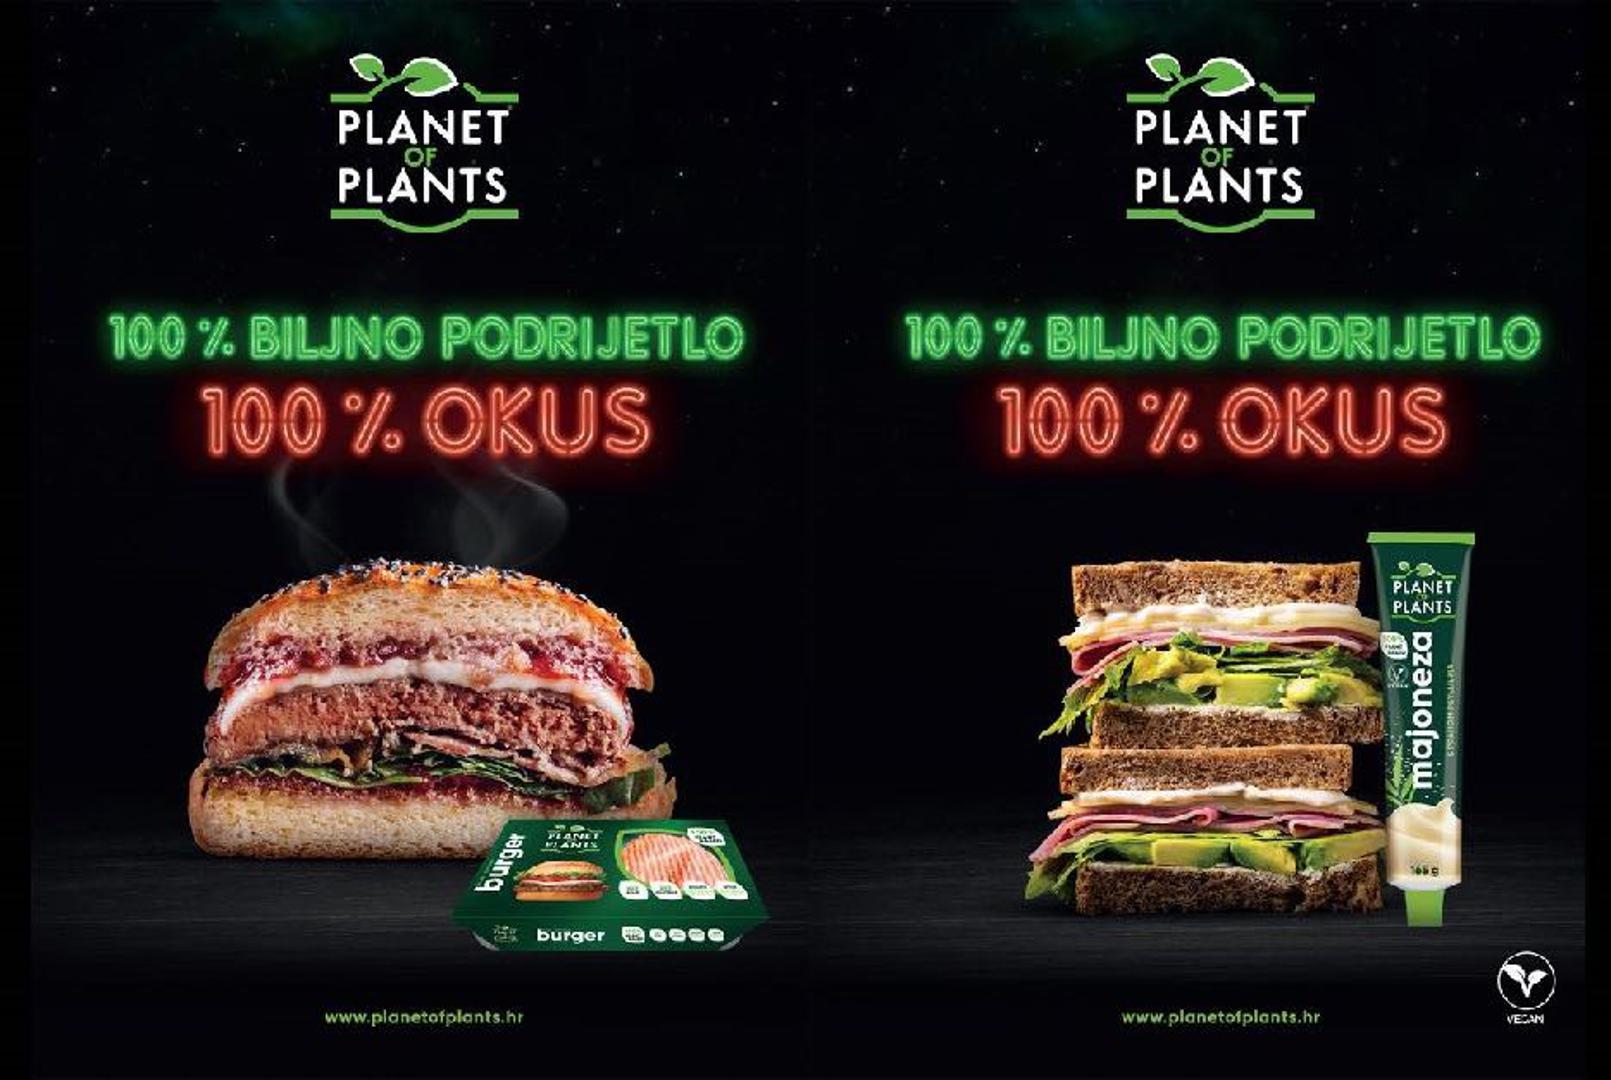 Prva hrvatska plant-based linija, Planet of plants